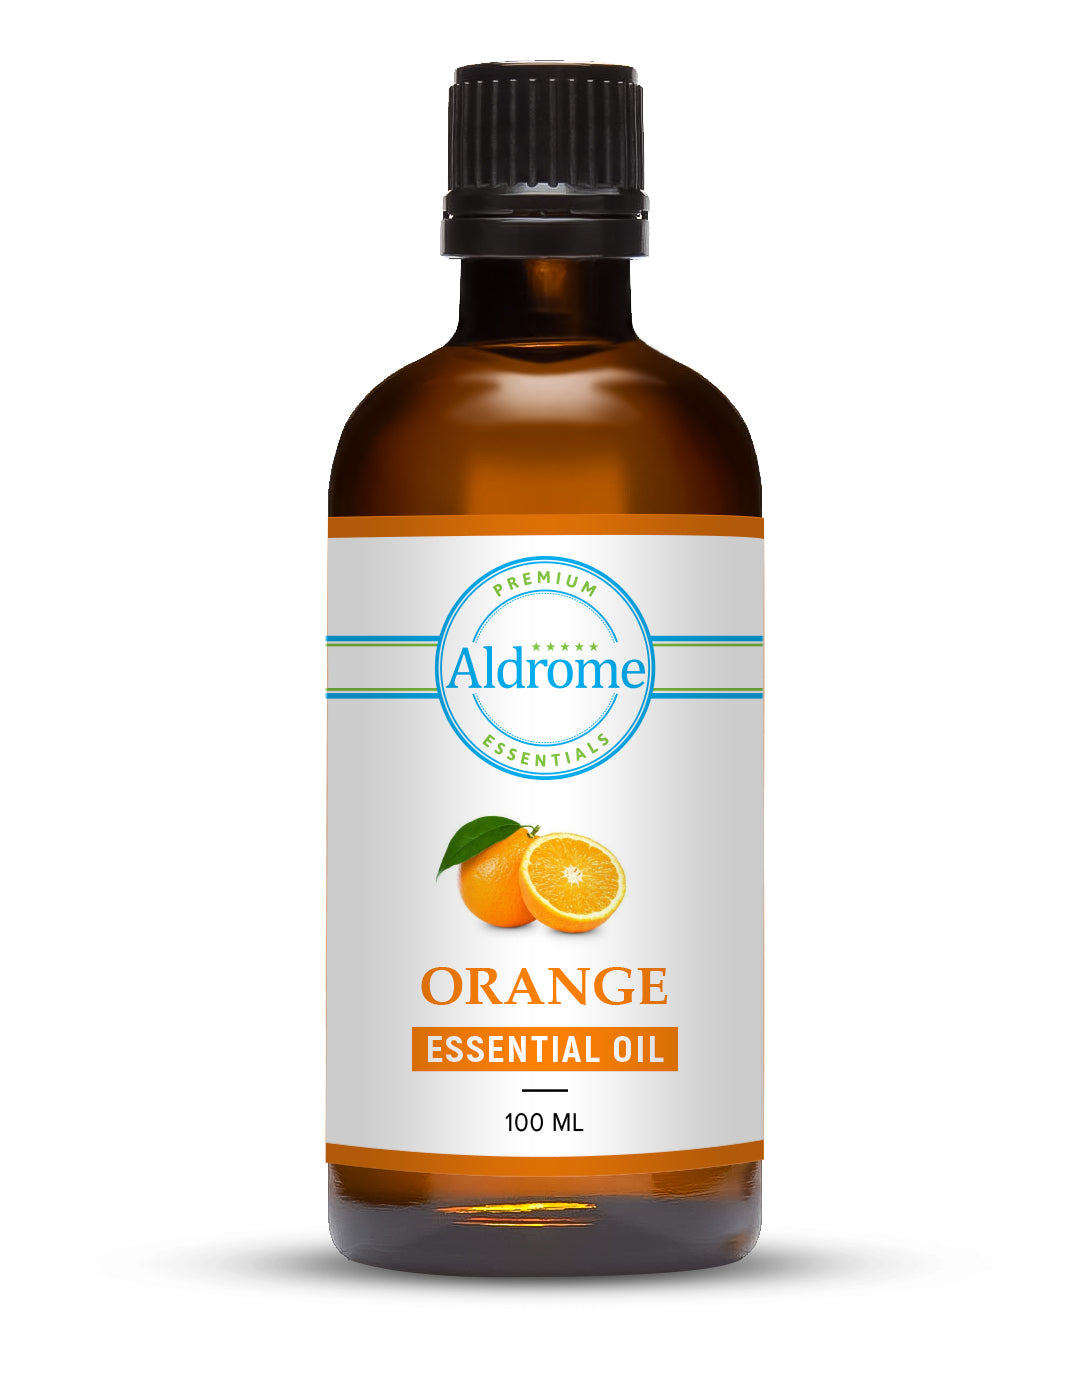 Buy Orange Essential Oil - 100ml at Best price | Aldrome Premium Fragrance Oil